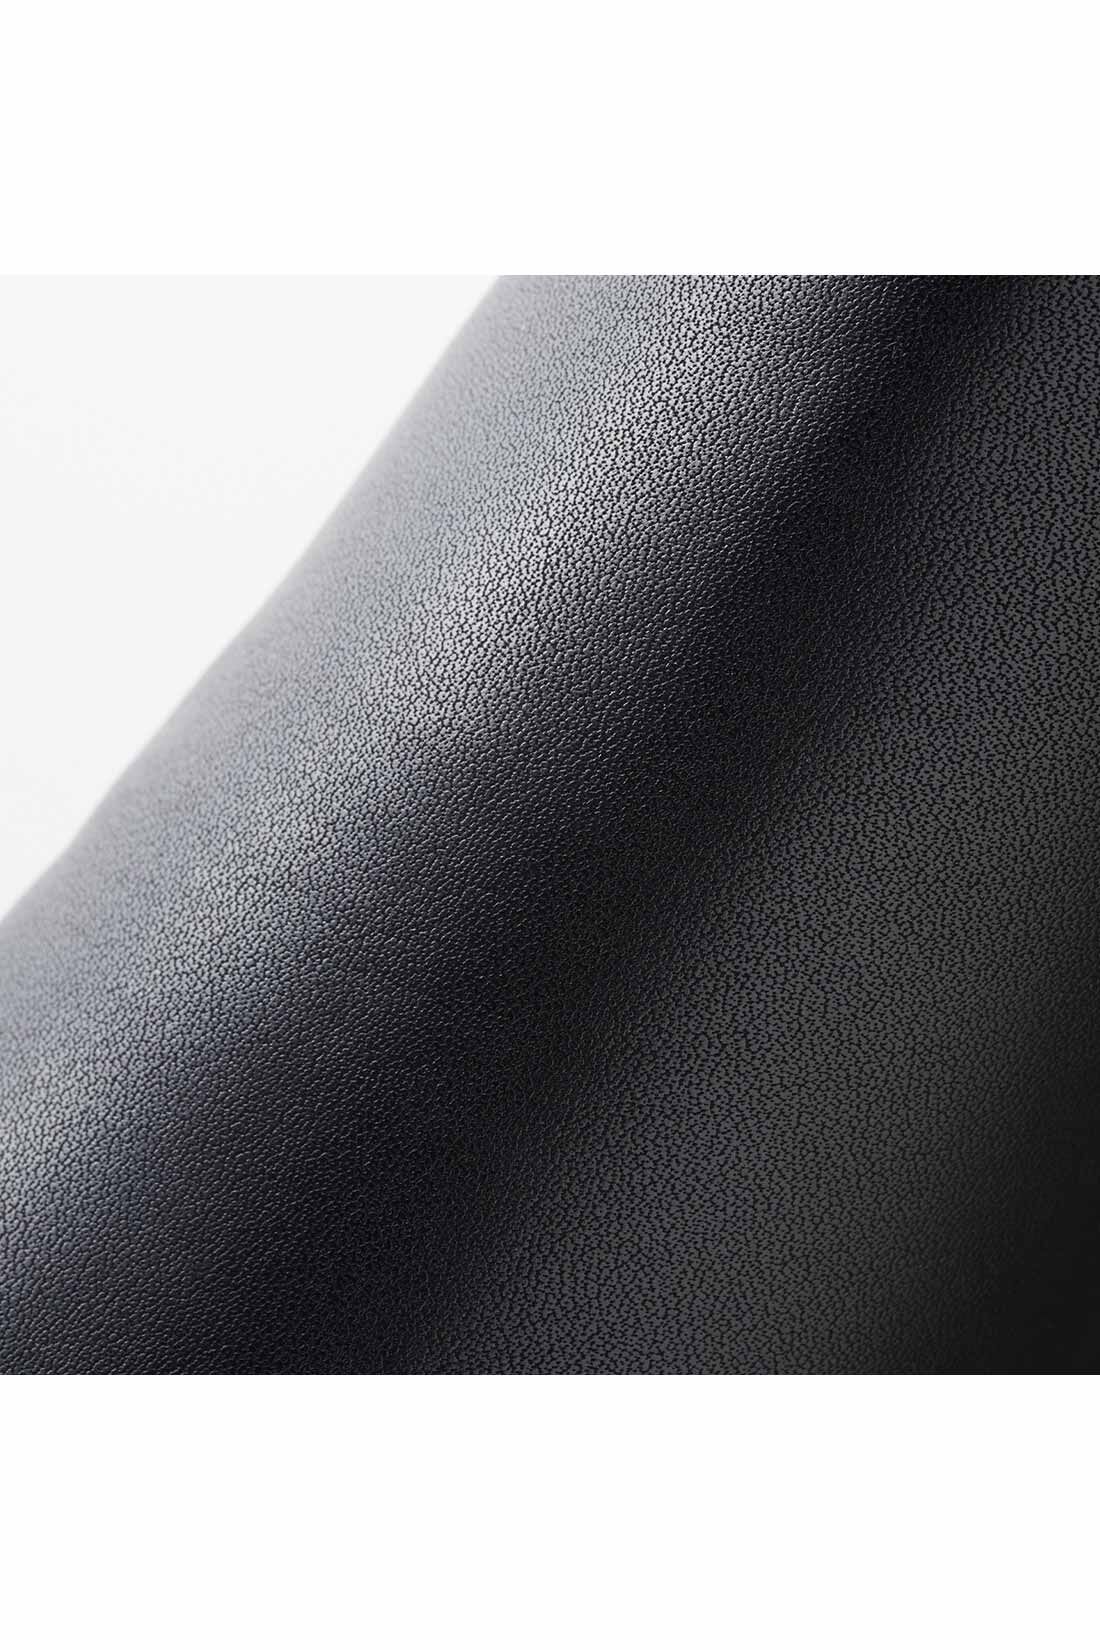 IEDIT|IEDIT[イディット]　どんなコーデにもすっきり履ける きれい見えサイドゴムショートブーツ〈ブラック〉|品よく高見えする本革ライクな合皮素材。